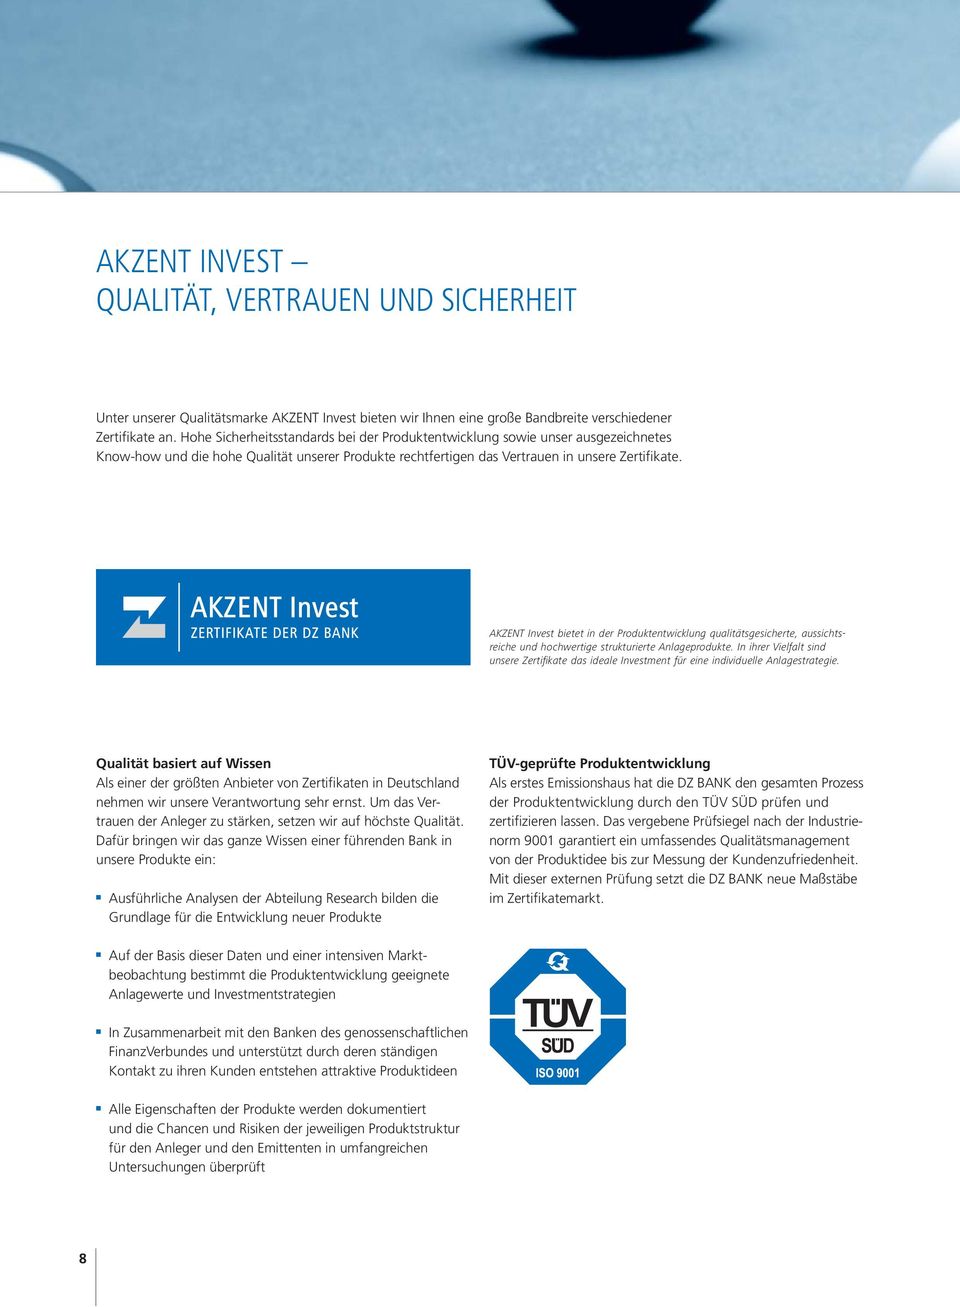 AKZENT Ivest bietet i der Produktetwicklug qualitätsgesicherte, aussichtsreiche ud hochwertige strukturierte Alageprodukte.